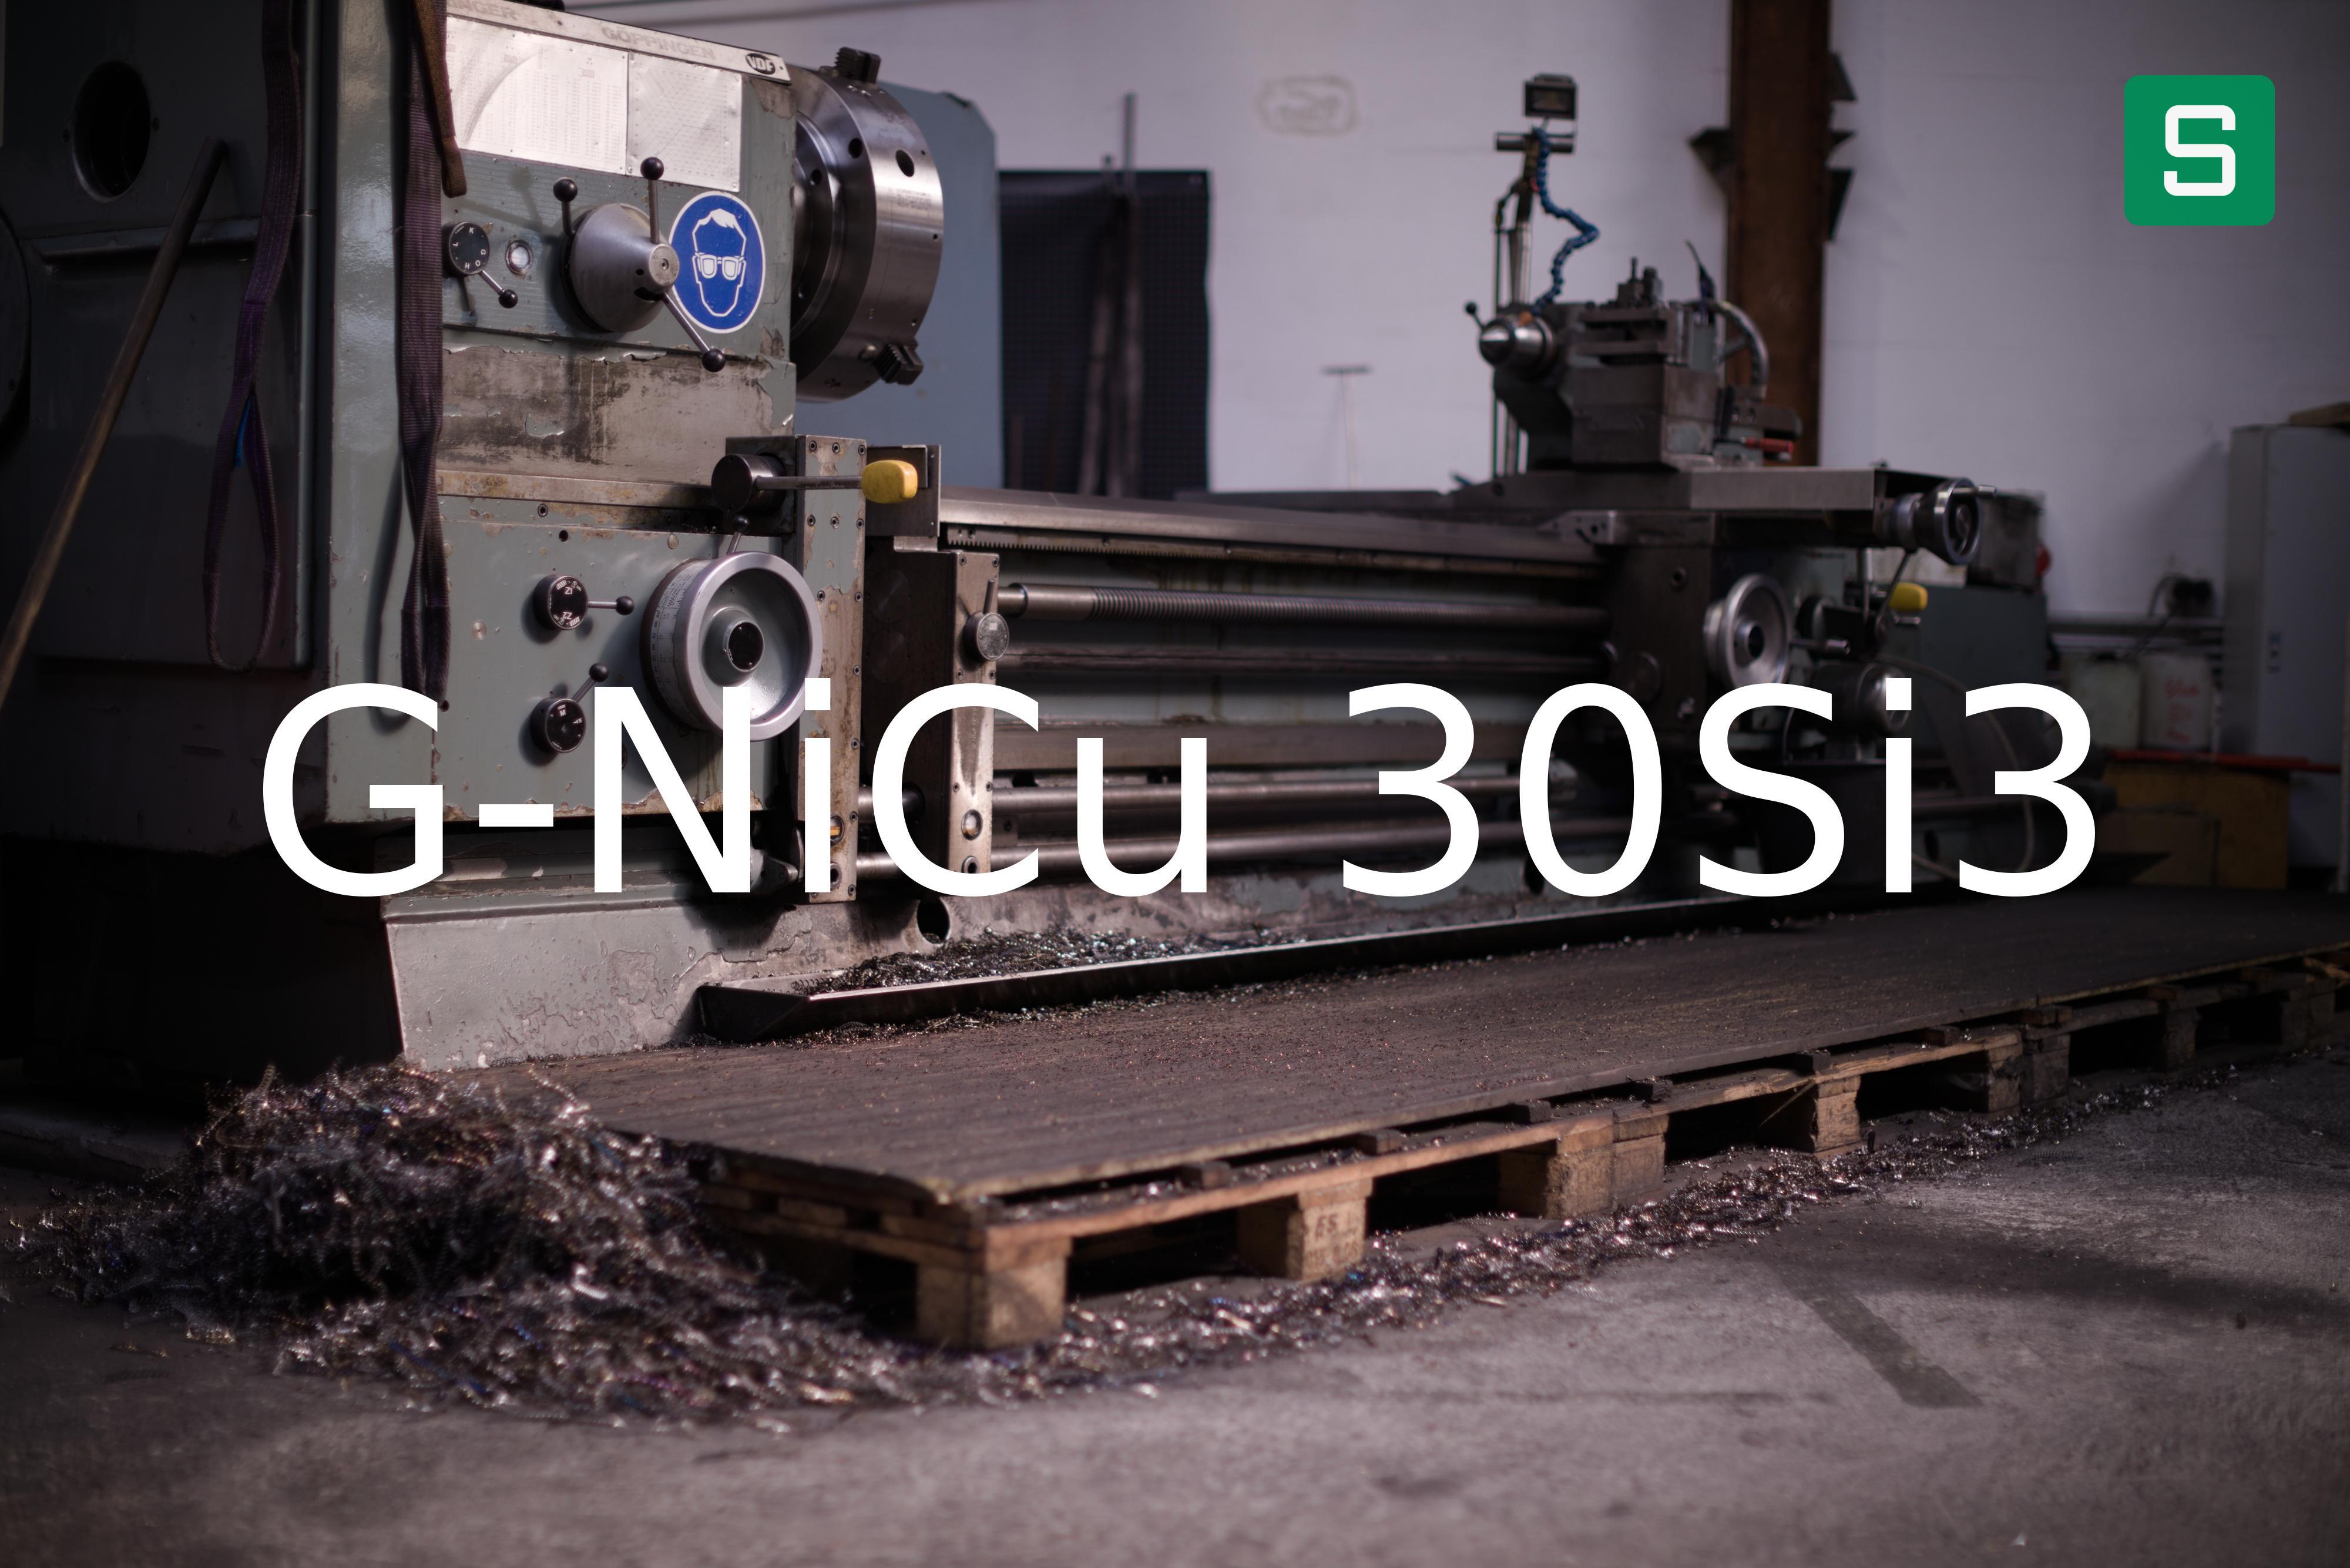 Steel Material: G-NiCu 30Si3